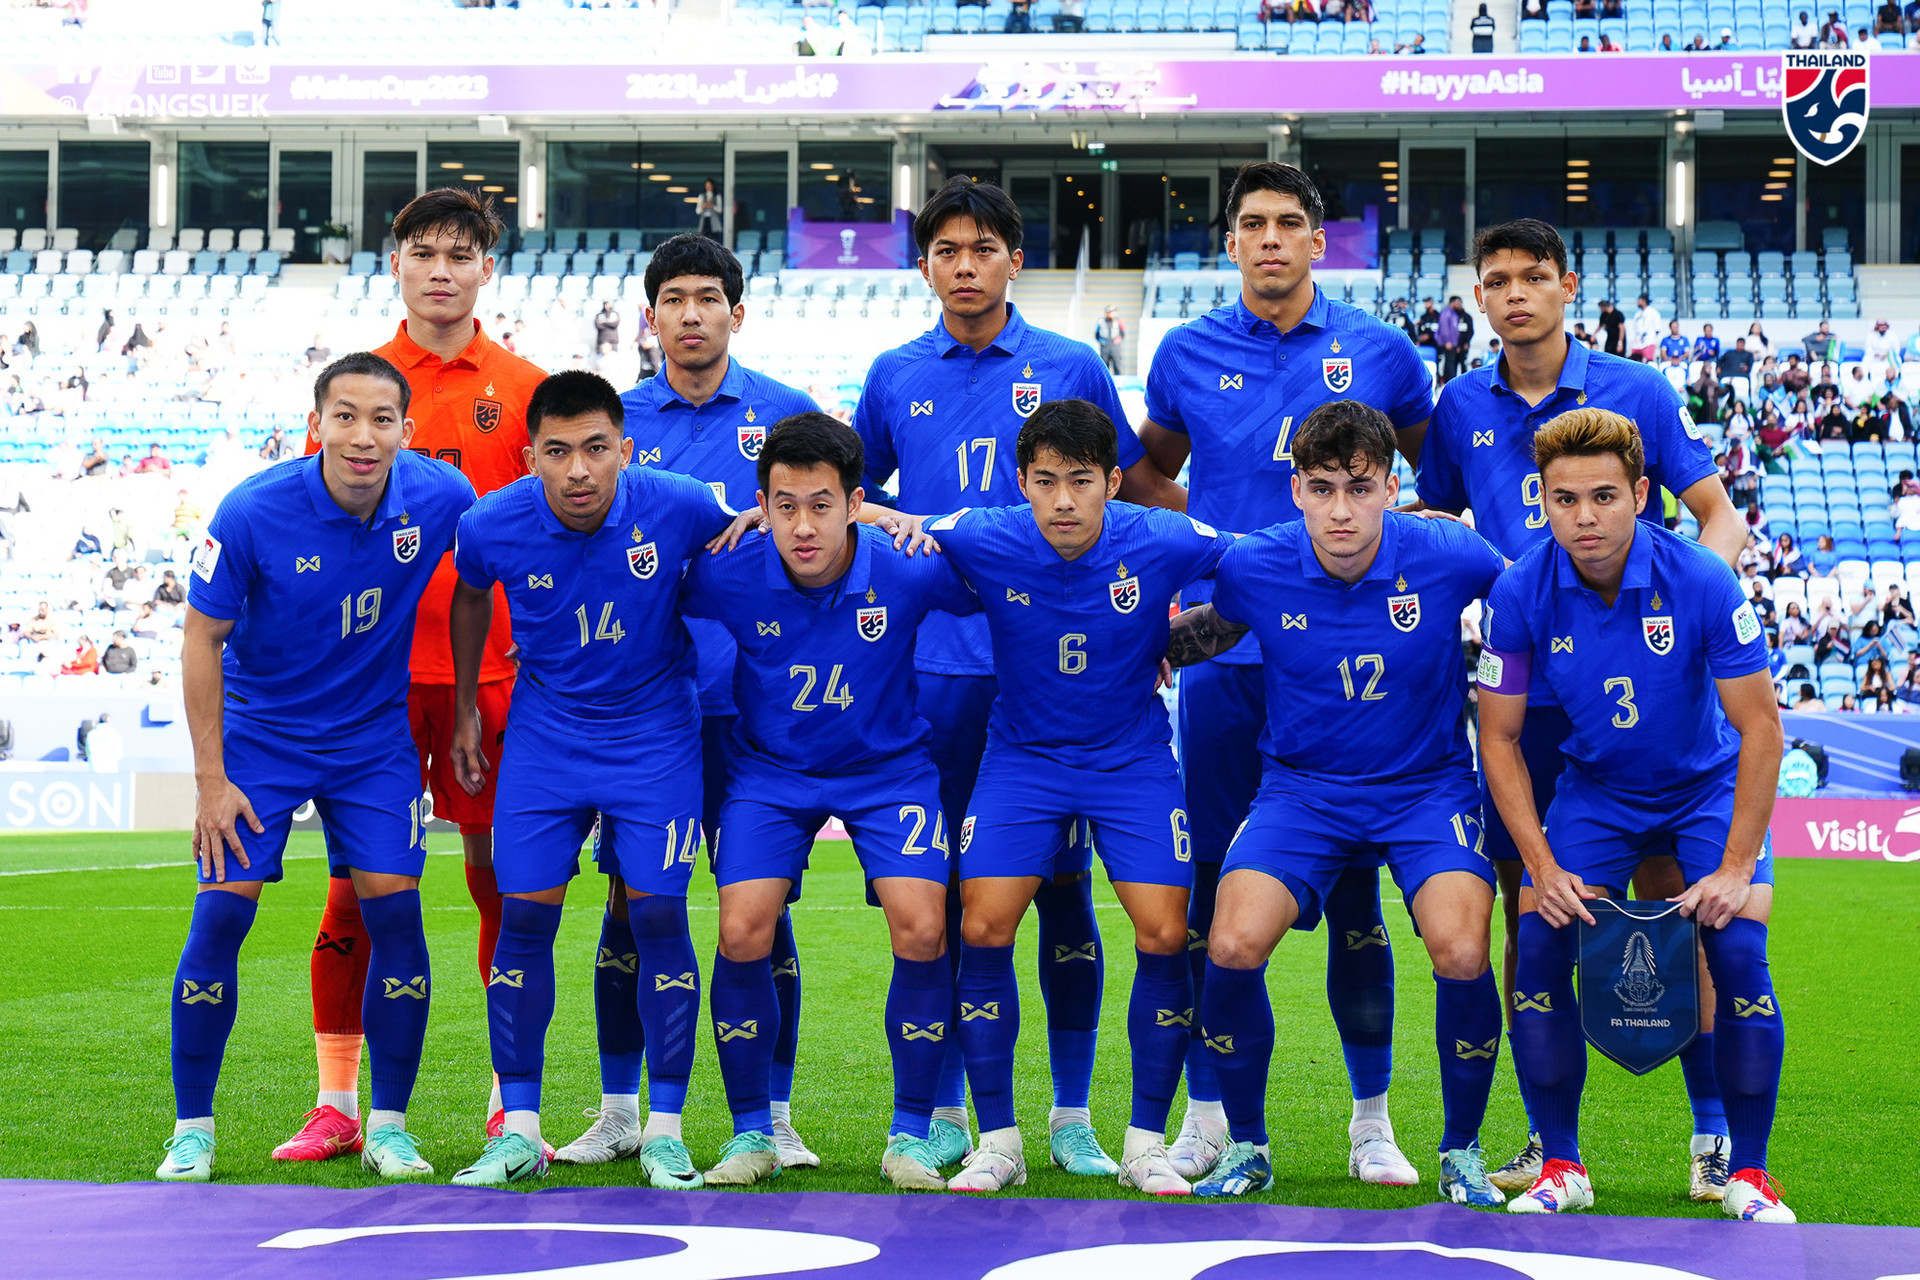 Thành tích khả quan gần nhất của đội tuyển Thái Lan là vào đến tứ kết Asian Cup 2023 sau khi không để thua trận nào ở vòng bảng - Ảnh: CHANGSUEK